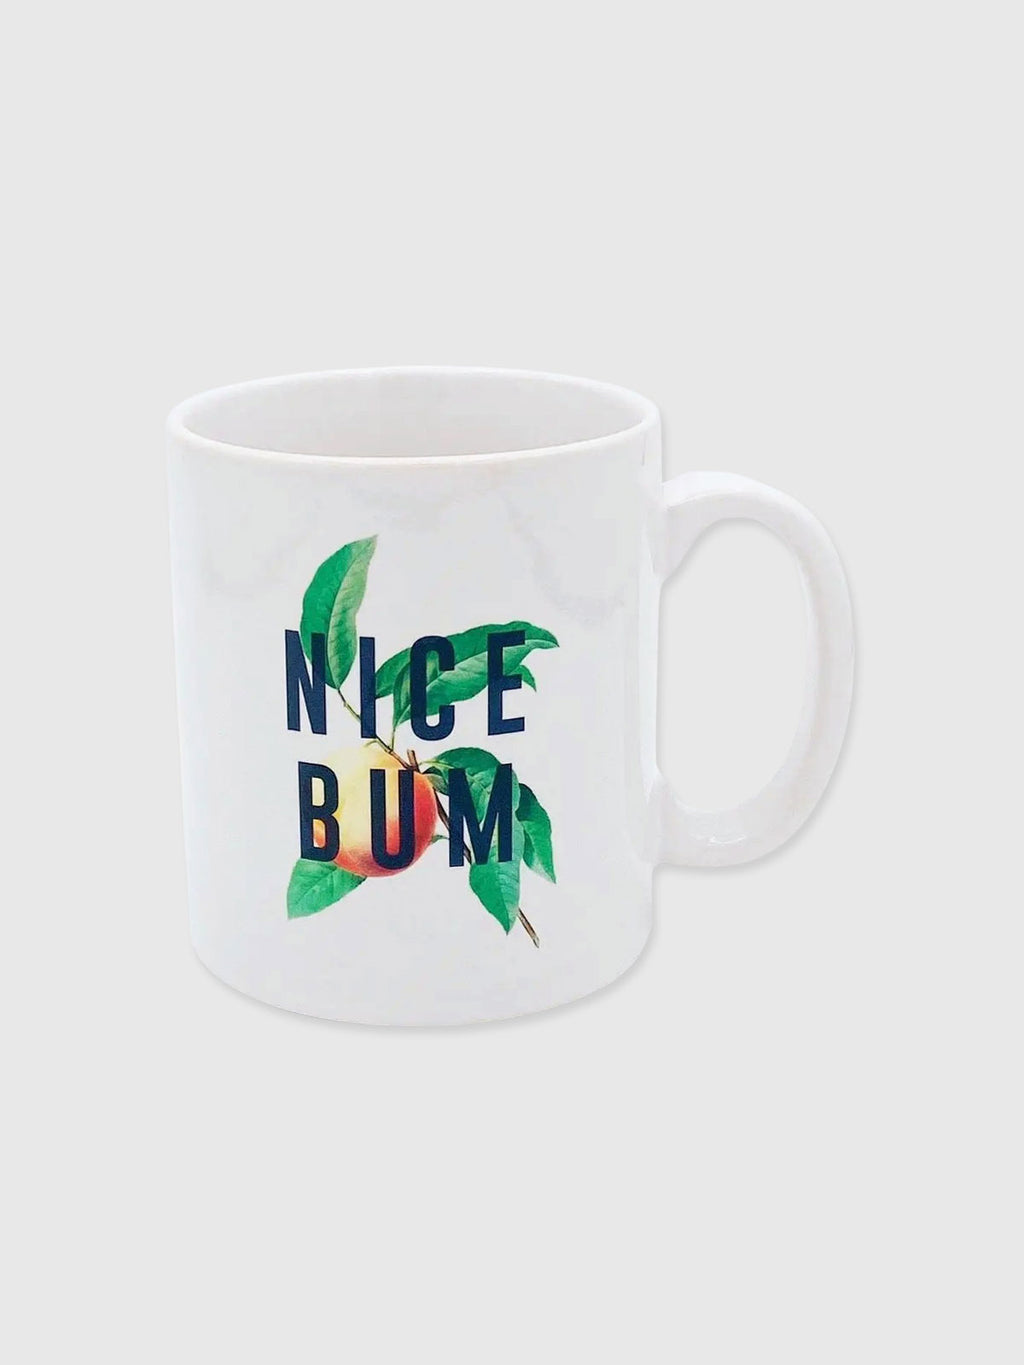 Cup / Mug - Nice Bum